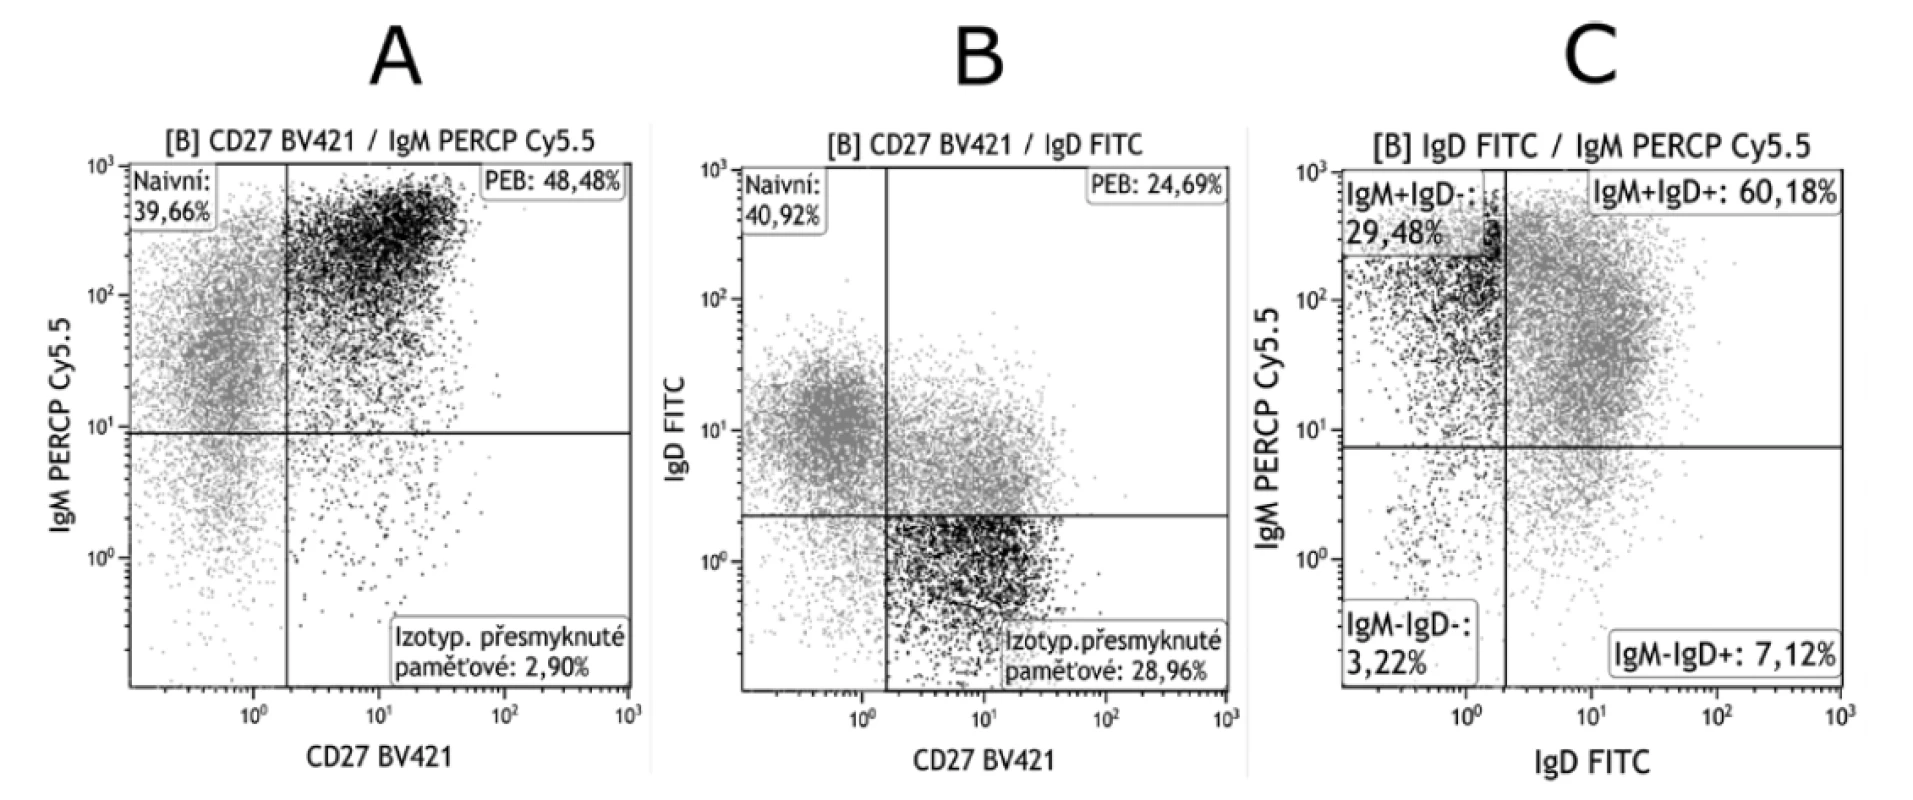 Gatování PEB pomocí kombinace znaků IgM, IgD a CD27<br>
Figure 4. Gating of PEB using the combination of the IgM, IgD, and CD27 markers